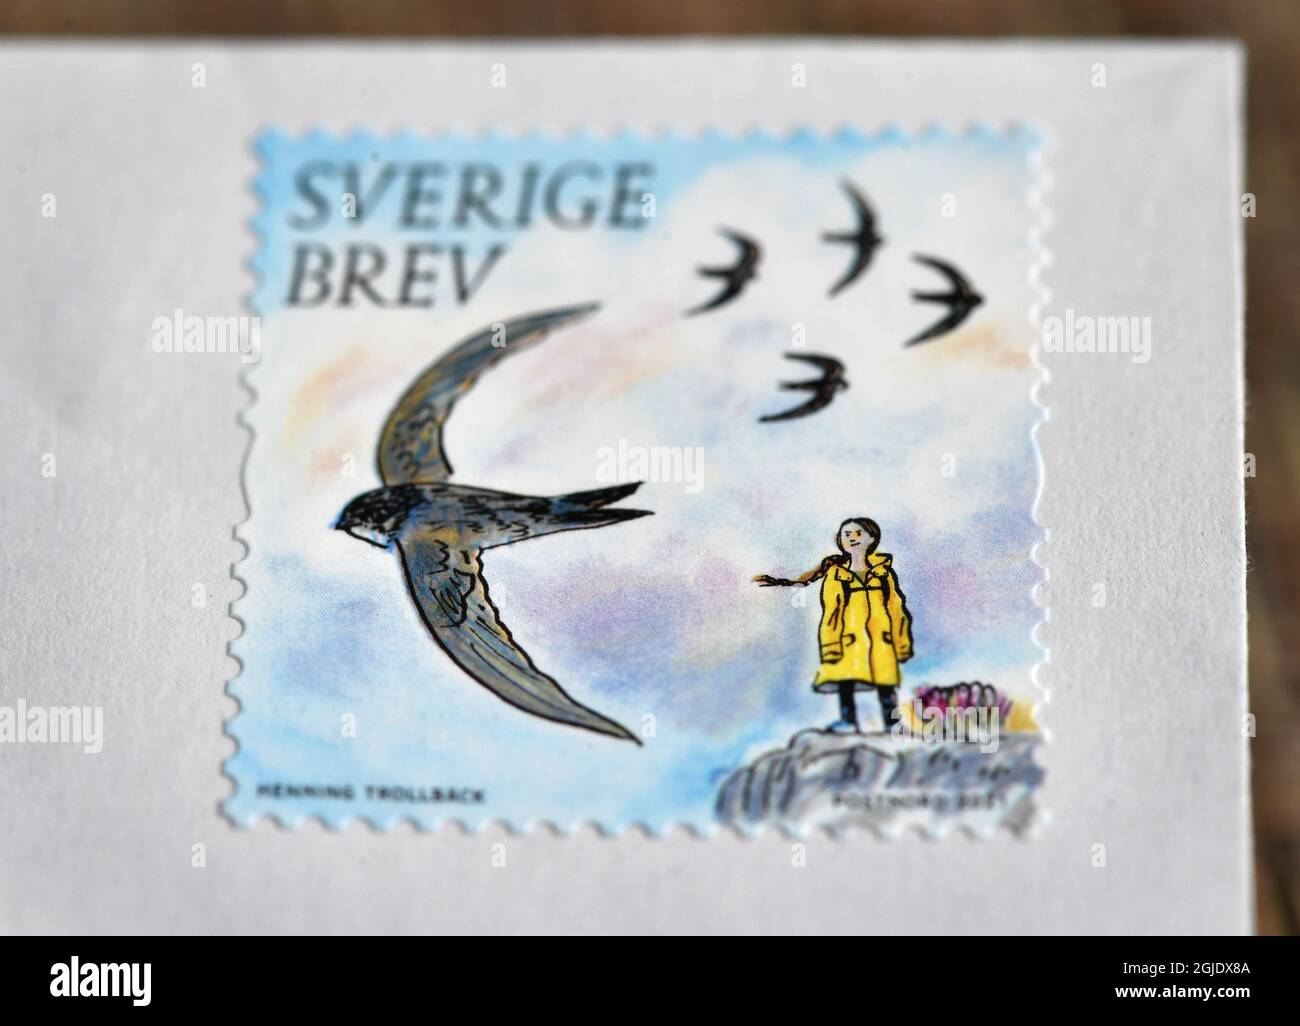 L'attivista ambientale svedese Greta Thunberg appare su un francobollo postale che fa parte di una serie incentrata sull'ambiente, illustrata da Henning Trollback e pubblicata in Svezia il 14 gennaio 2021. Foto Anders Wiklund / TT / code 10040 *** SWEDEN OUT *** Foto Stock